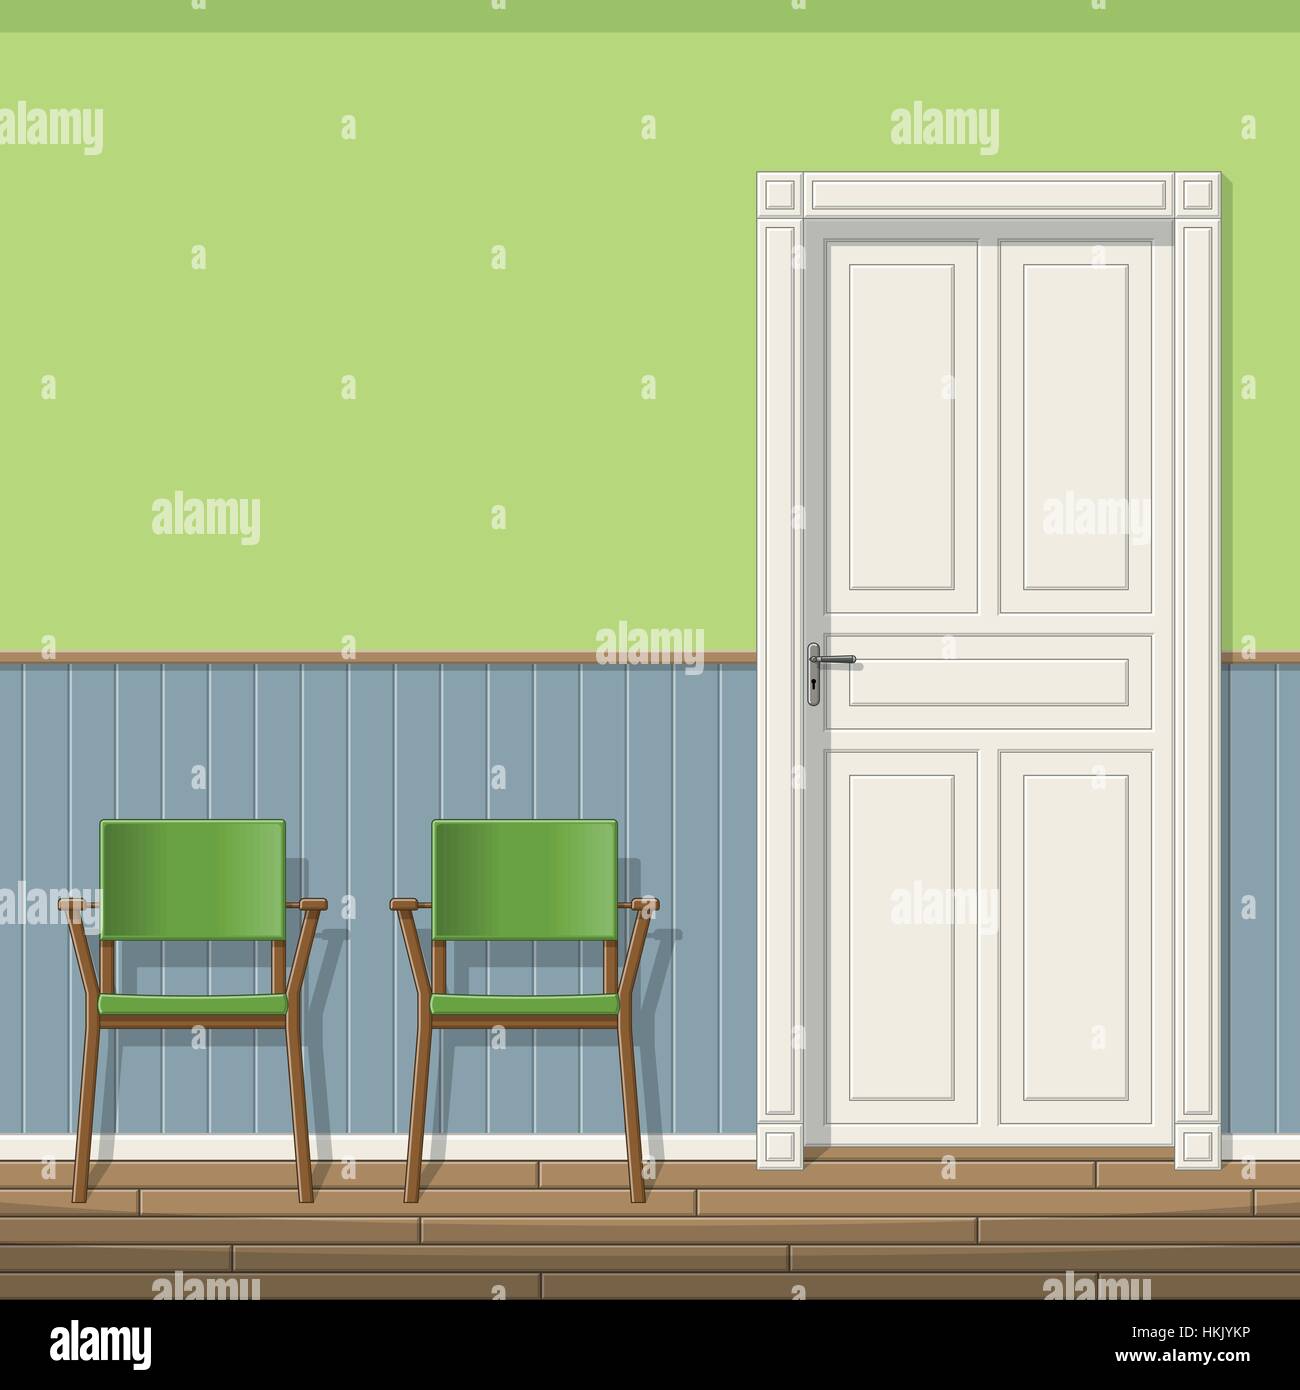 Illustrazione di una sala di attesa con sedie Illustrazione Vettoriale